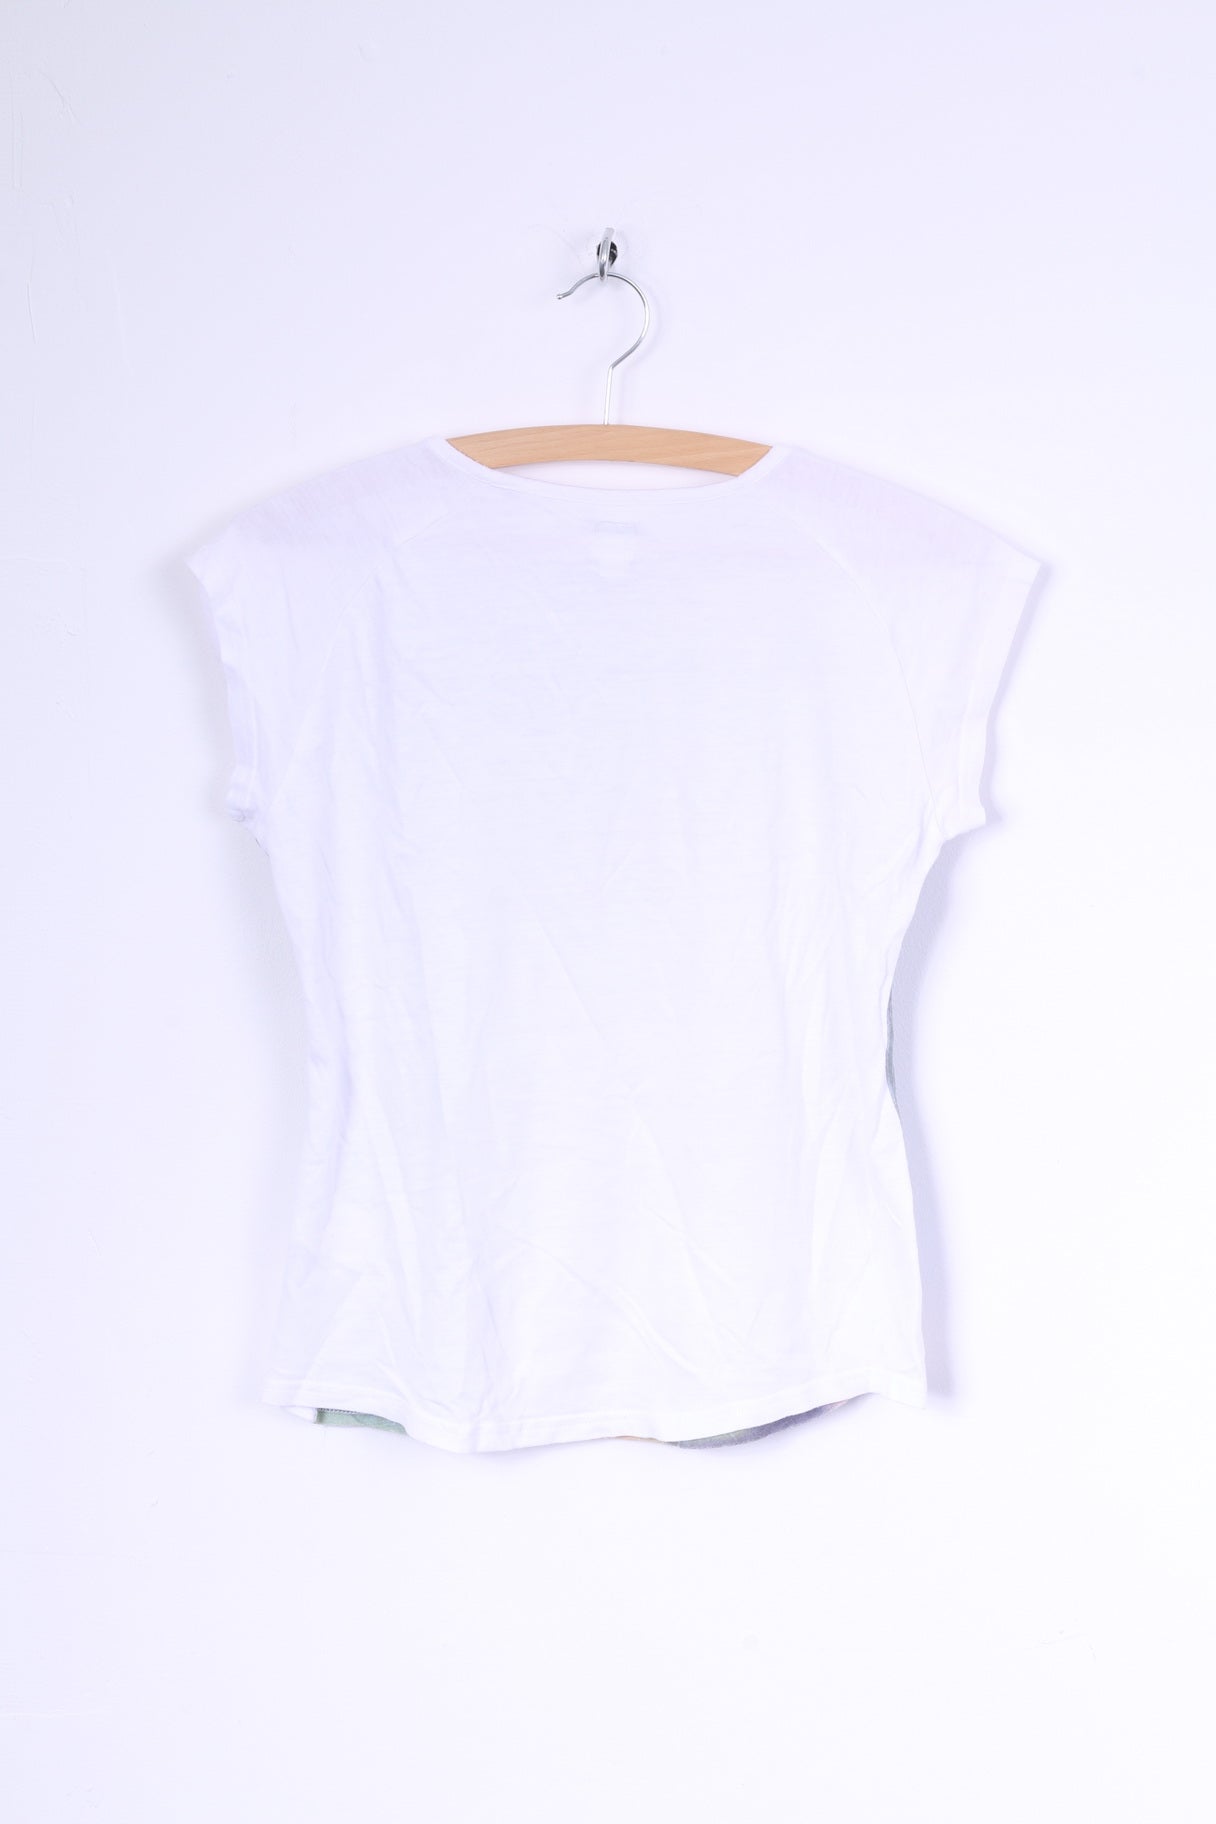 Adidas Femme 40 XS Chemise Blanc Coton Ras du Cou Graphique Football